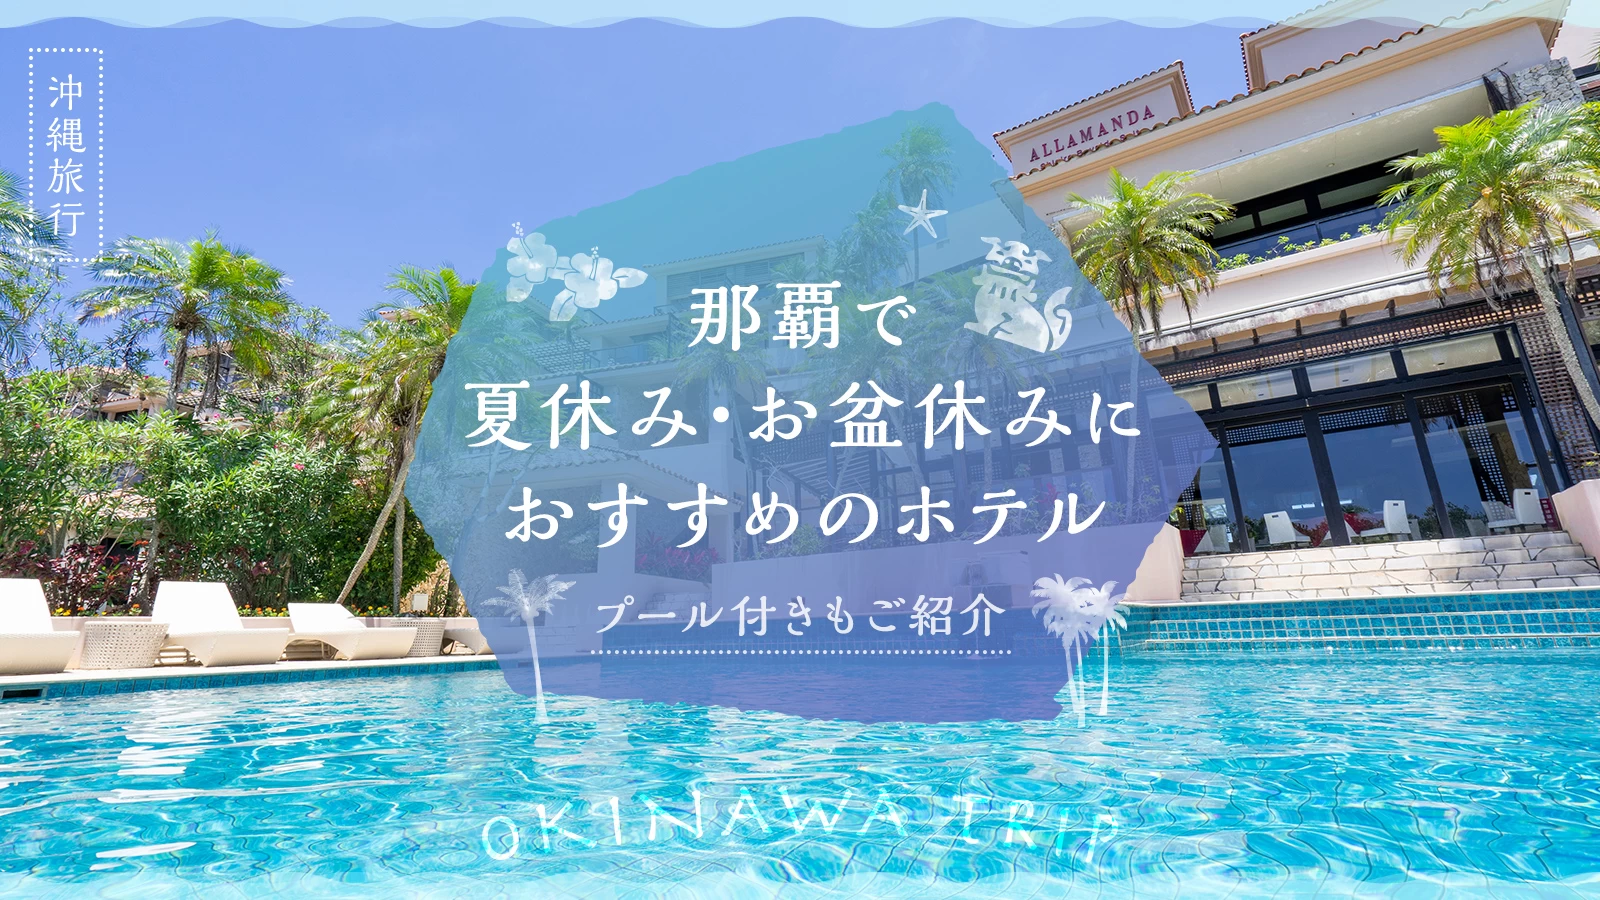 【沖縄旅行】那覇で夏休み・お盆休みにおすすめのホテル4選 プール付きもご紹介